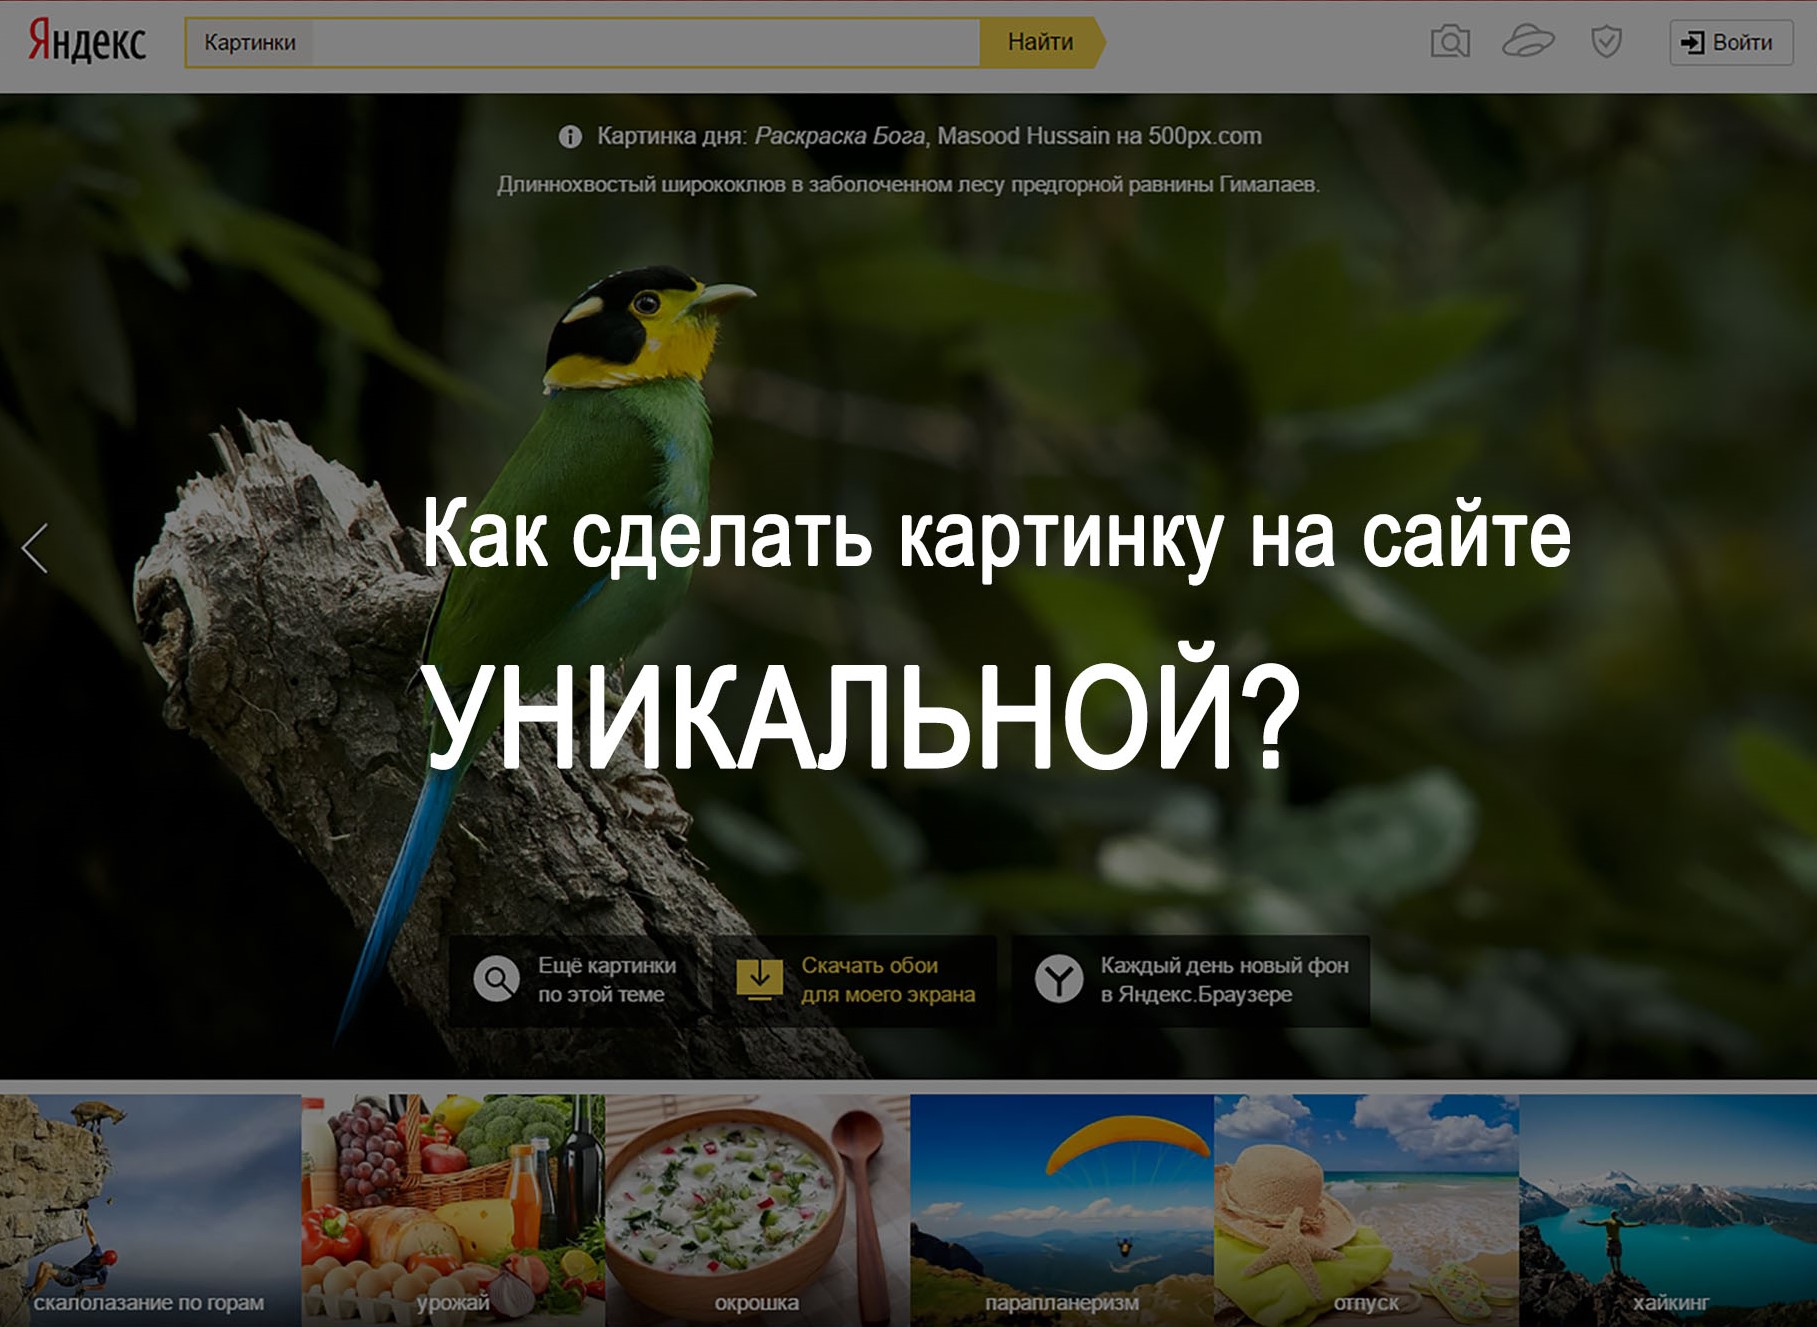 Как Сделать Фото Уникальным Для Яндекса